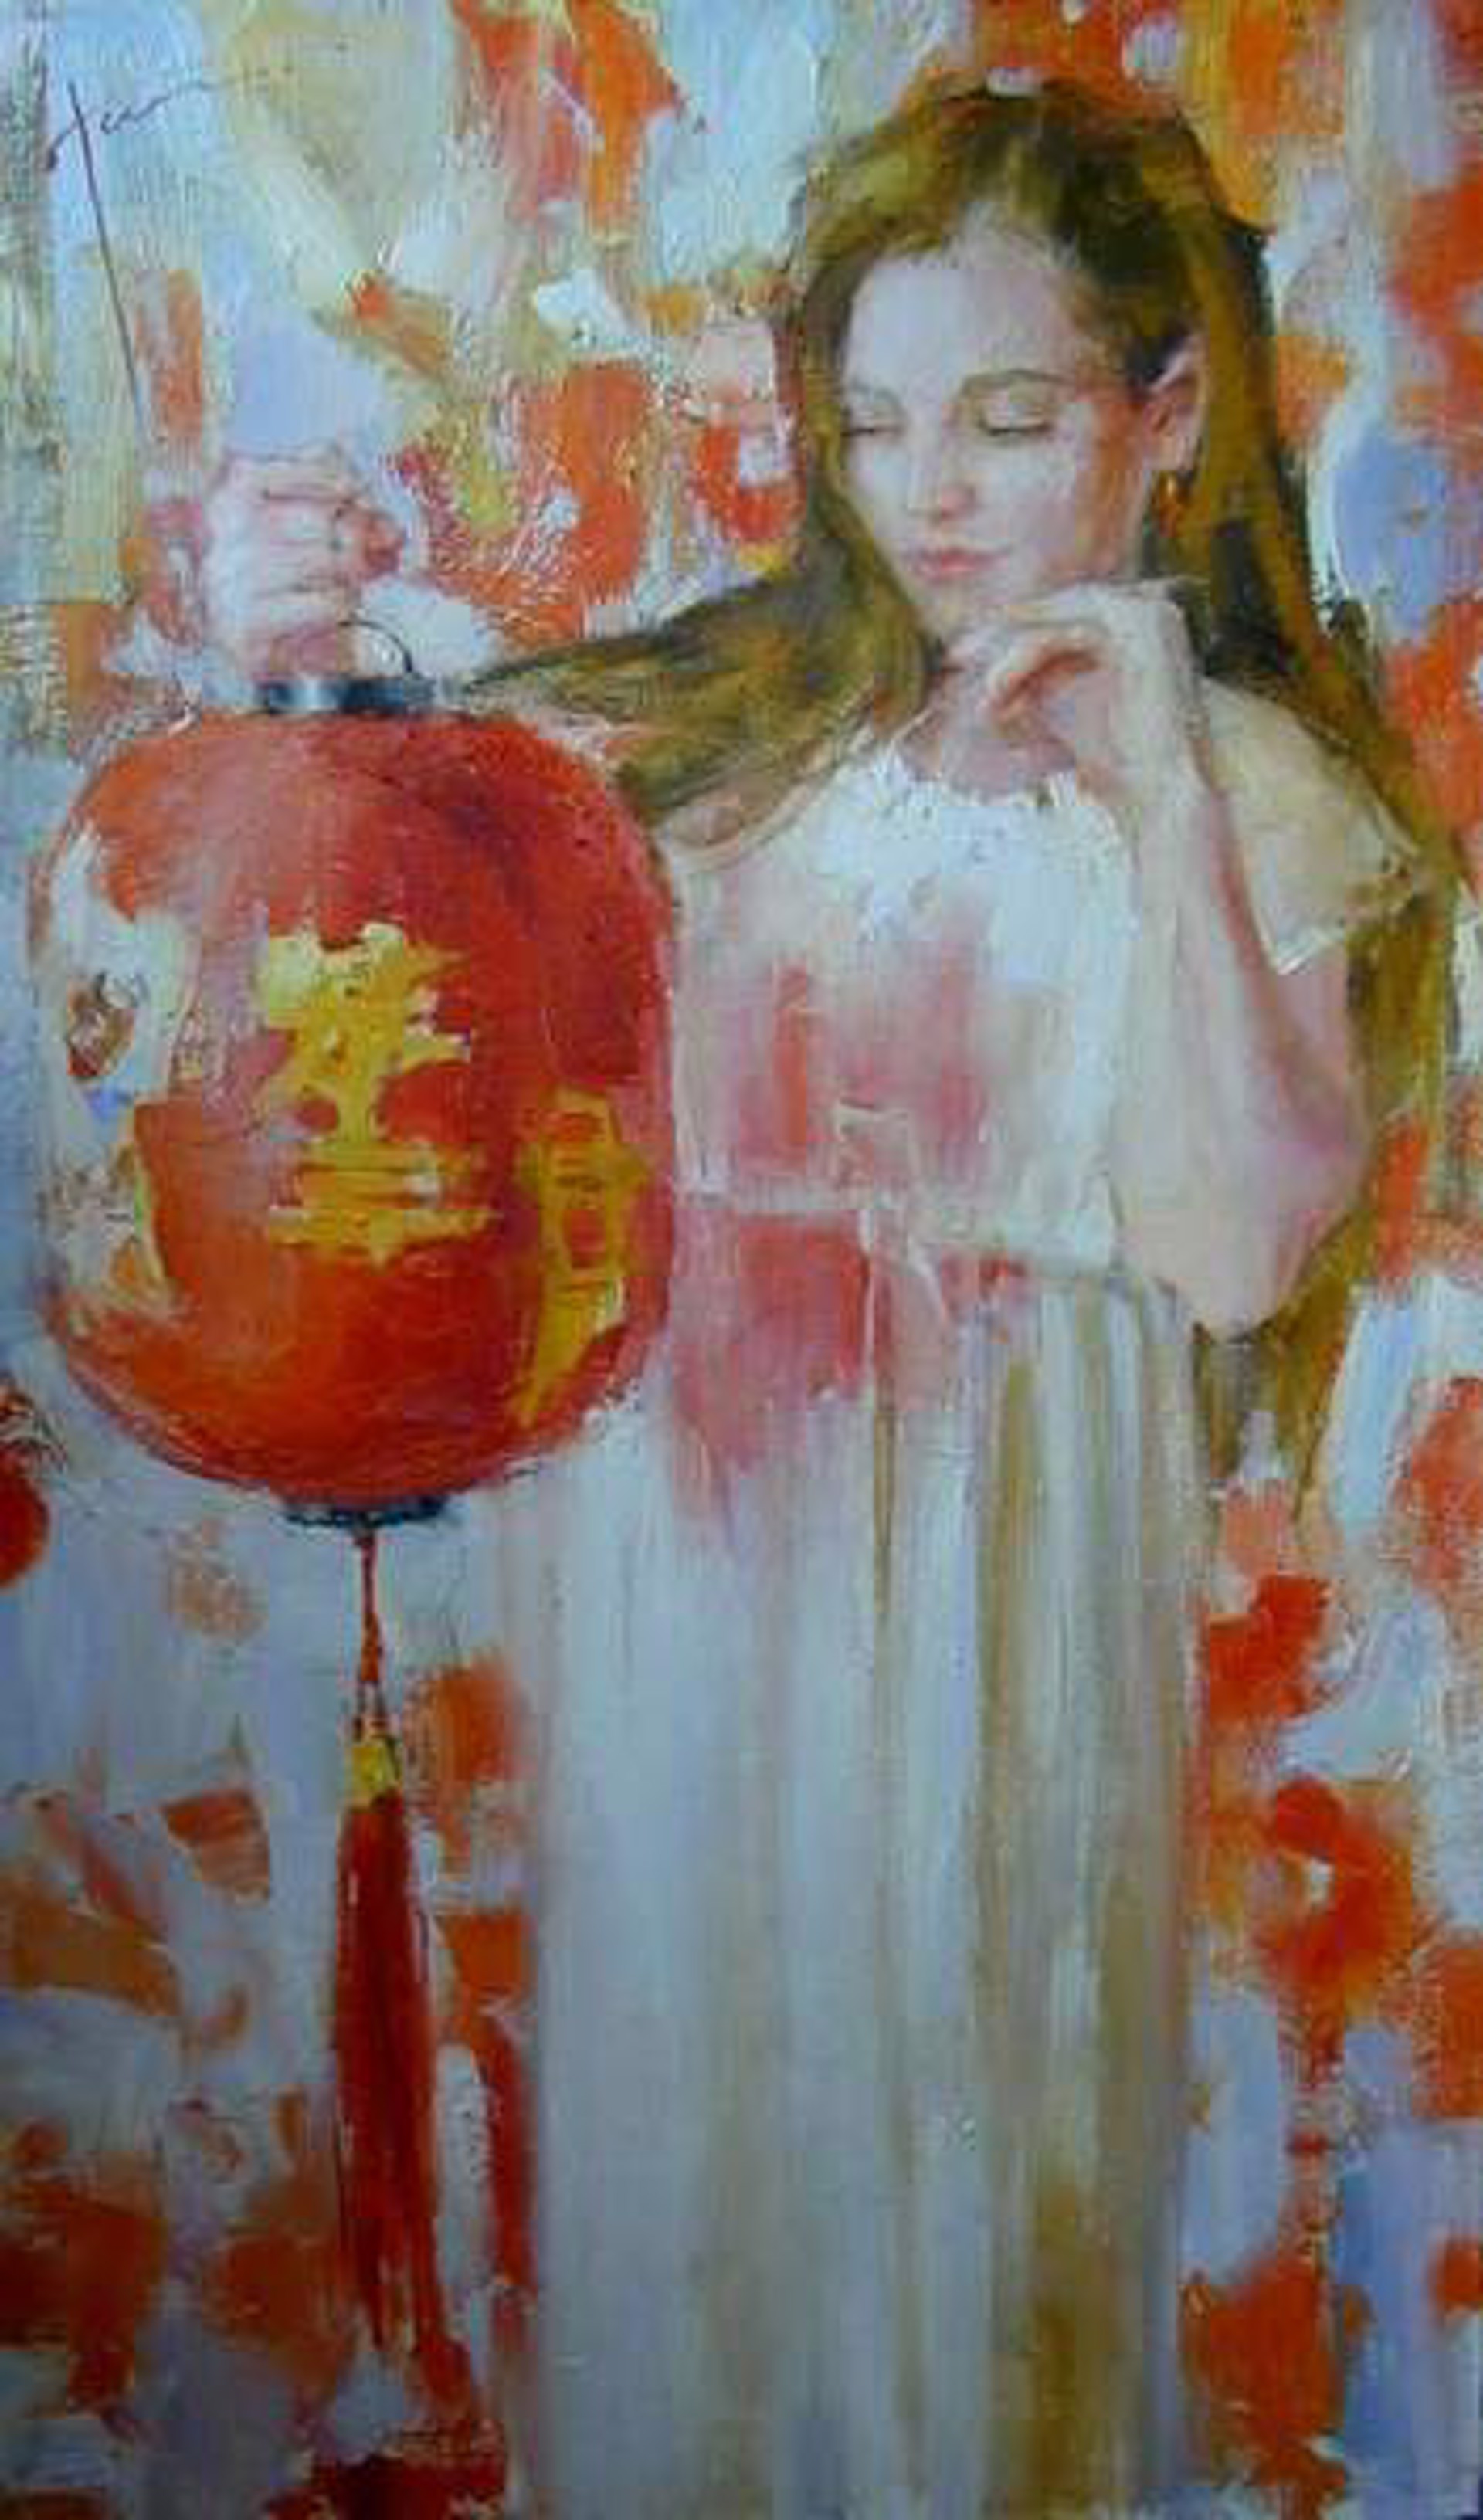 Girl with Chinese Lantern by Yana Golubyatnikova